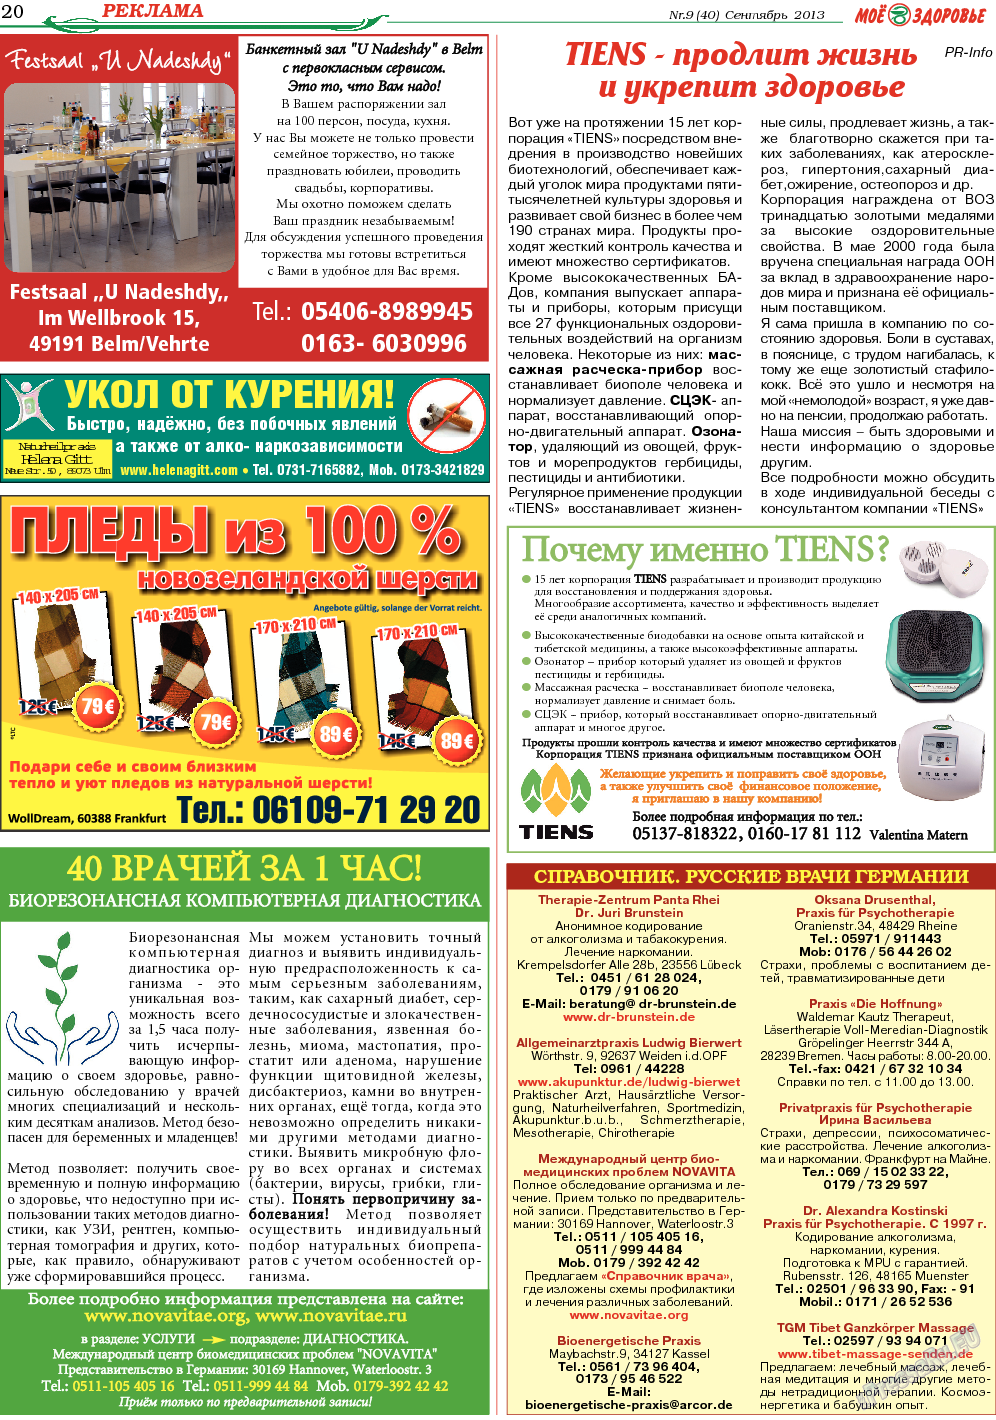 Кругозор, газета. 2013 №9 стр.20